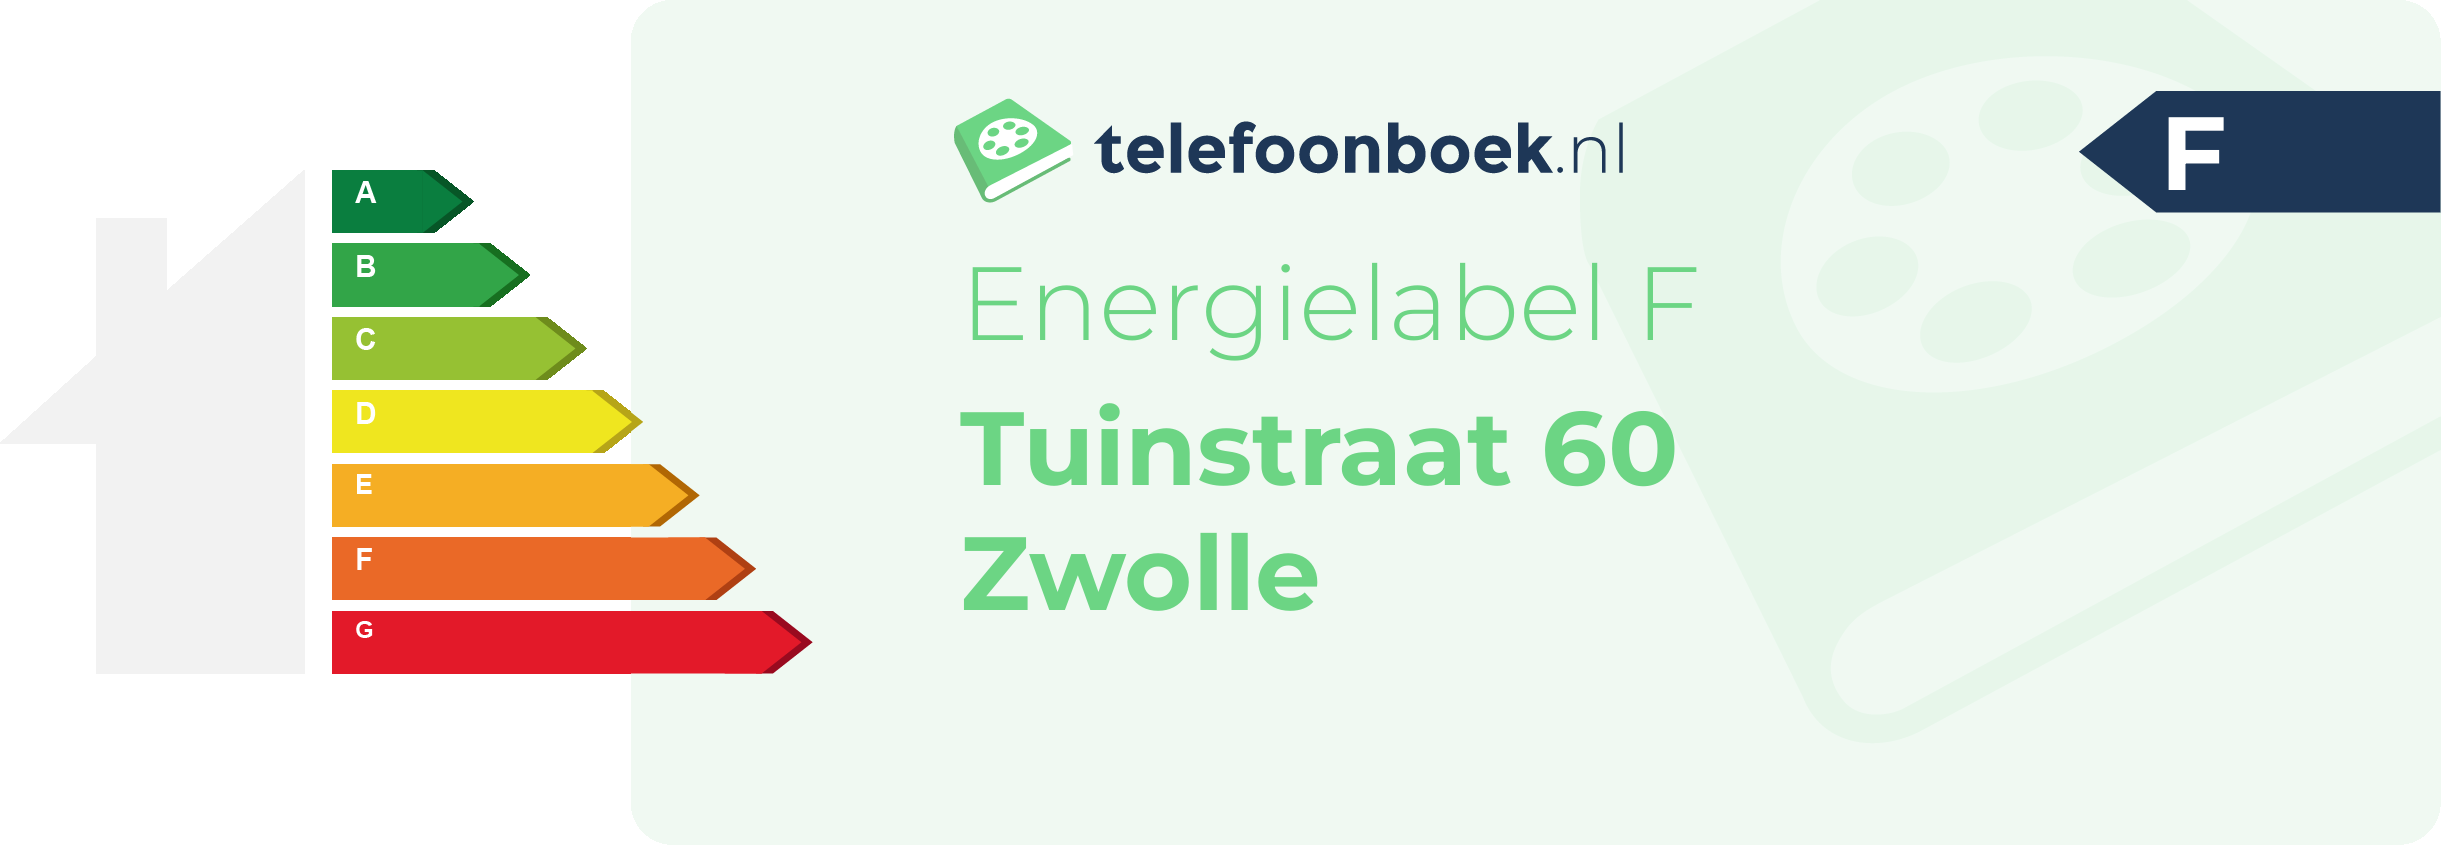 Energielabel Tuinstraat 60 Zwolle